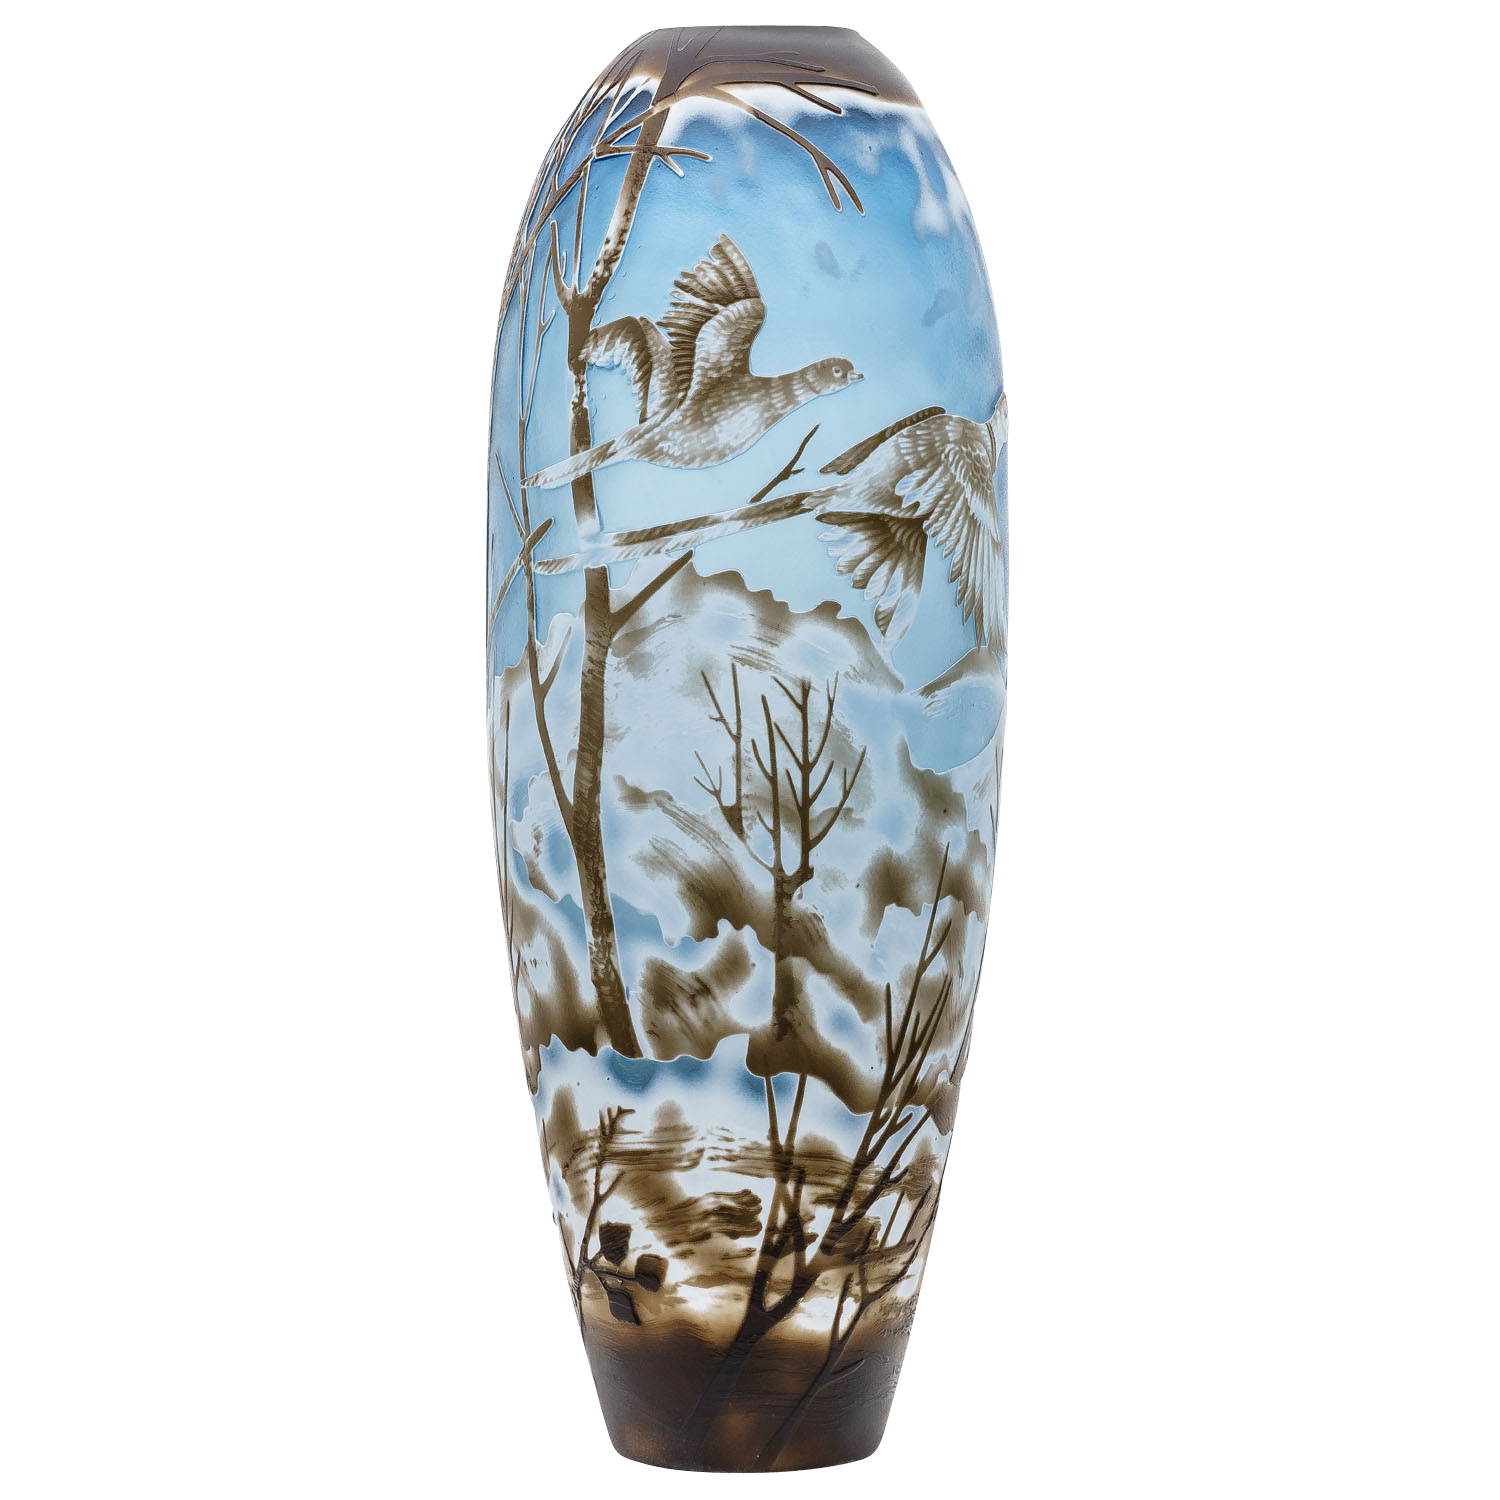 Vaasreplica naar Galle Gallé glazen vaas glas antiek art exemplaar c1 | Nederland